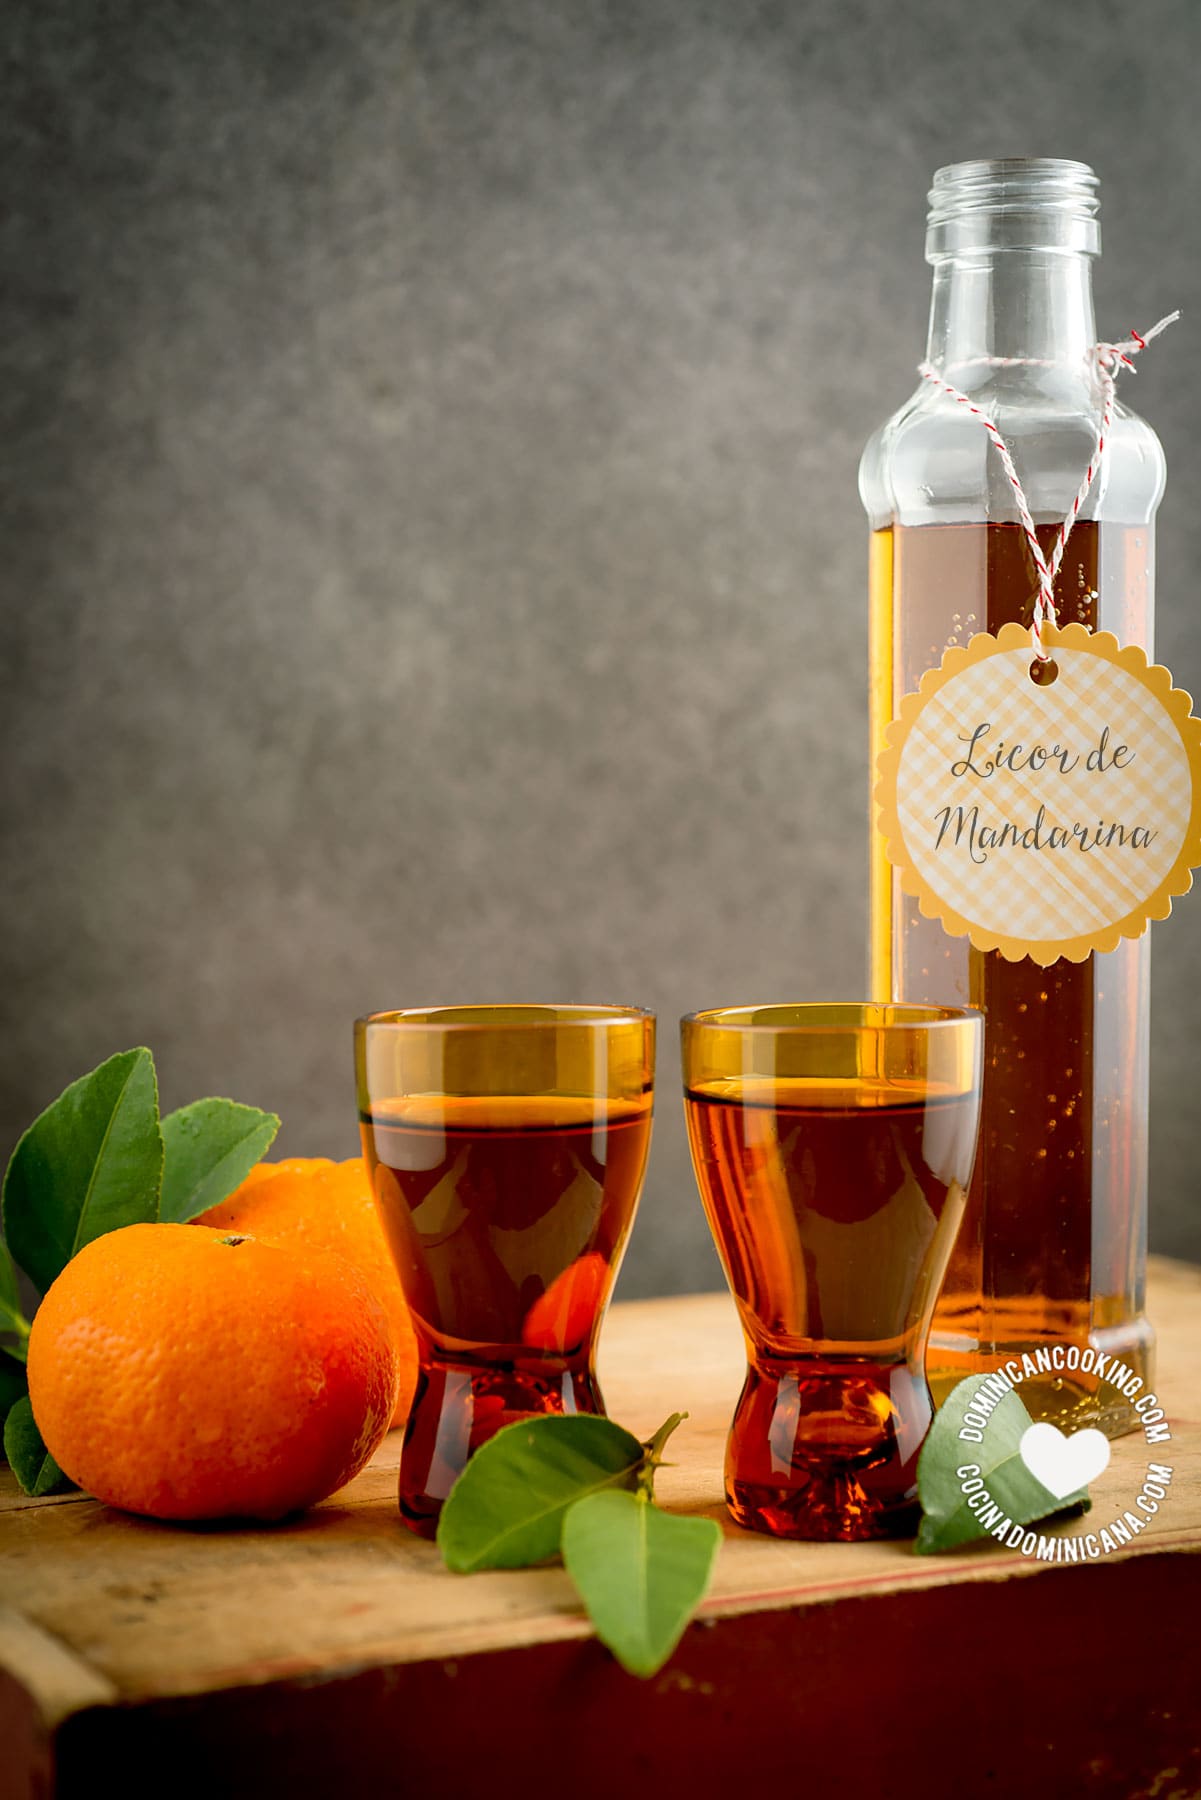 Mandarin orange liqueur.